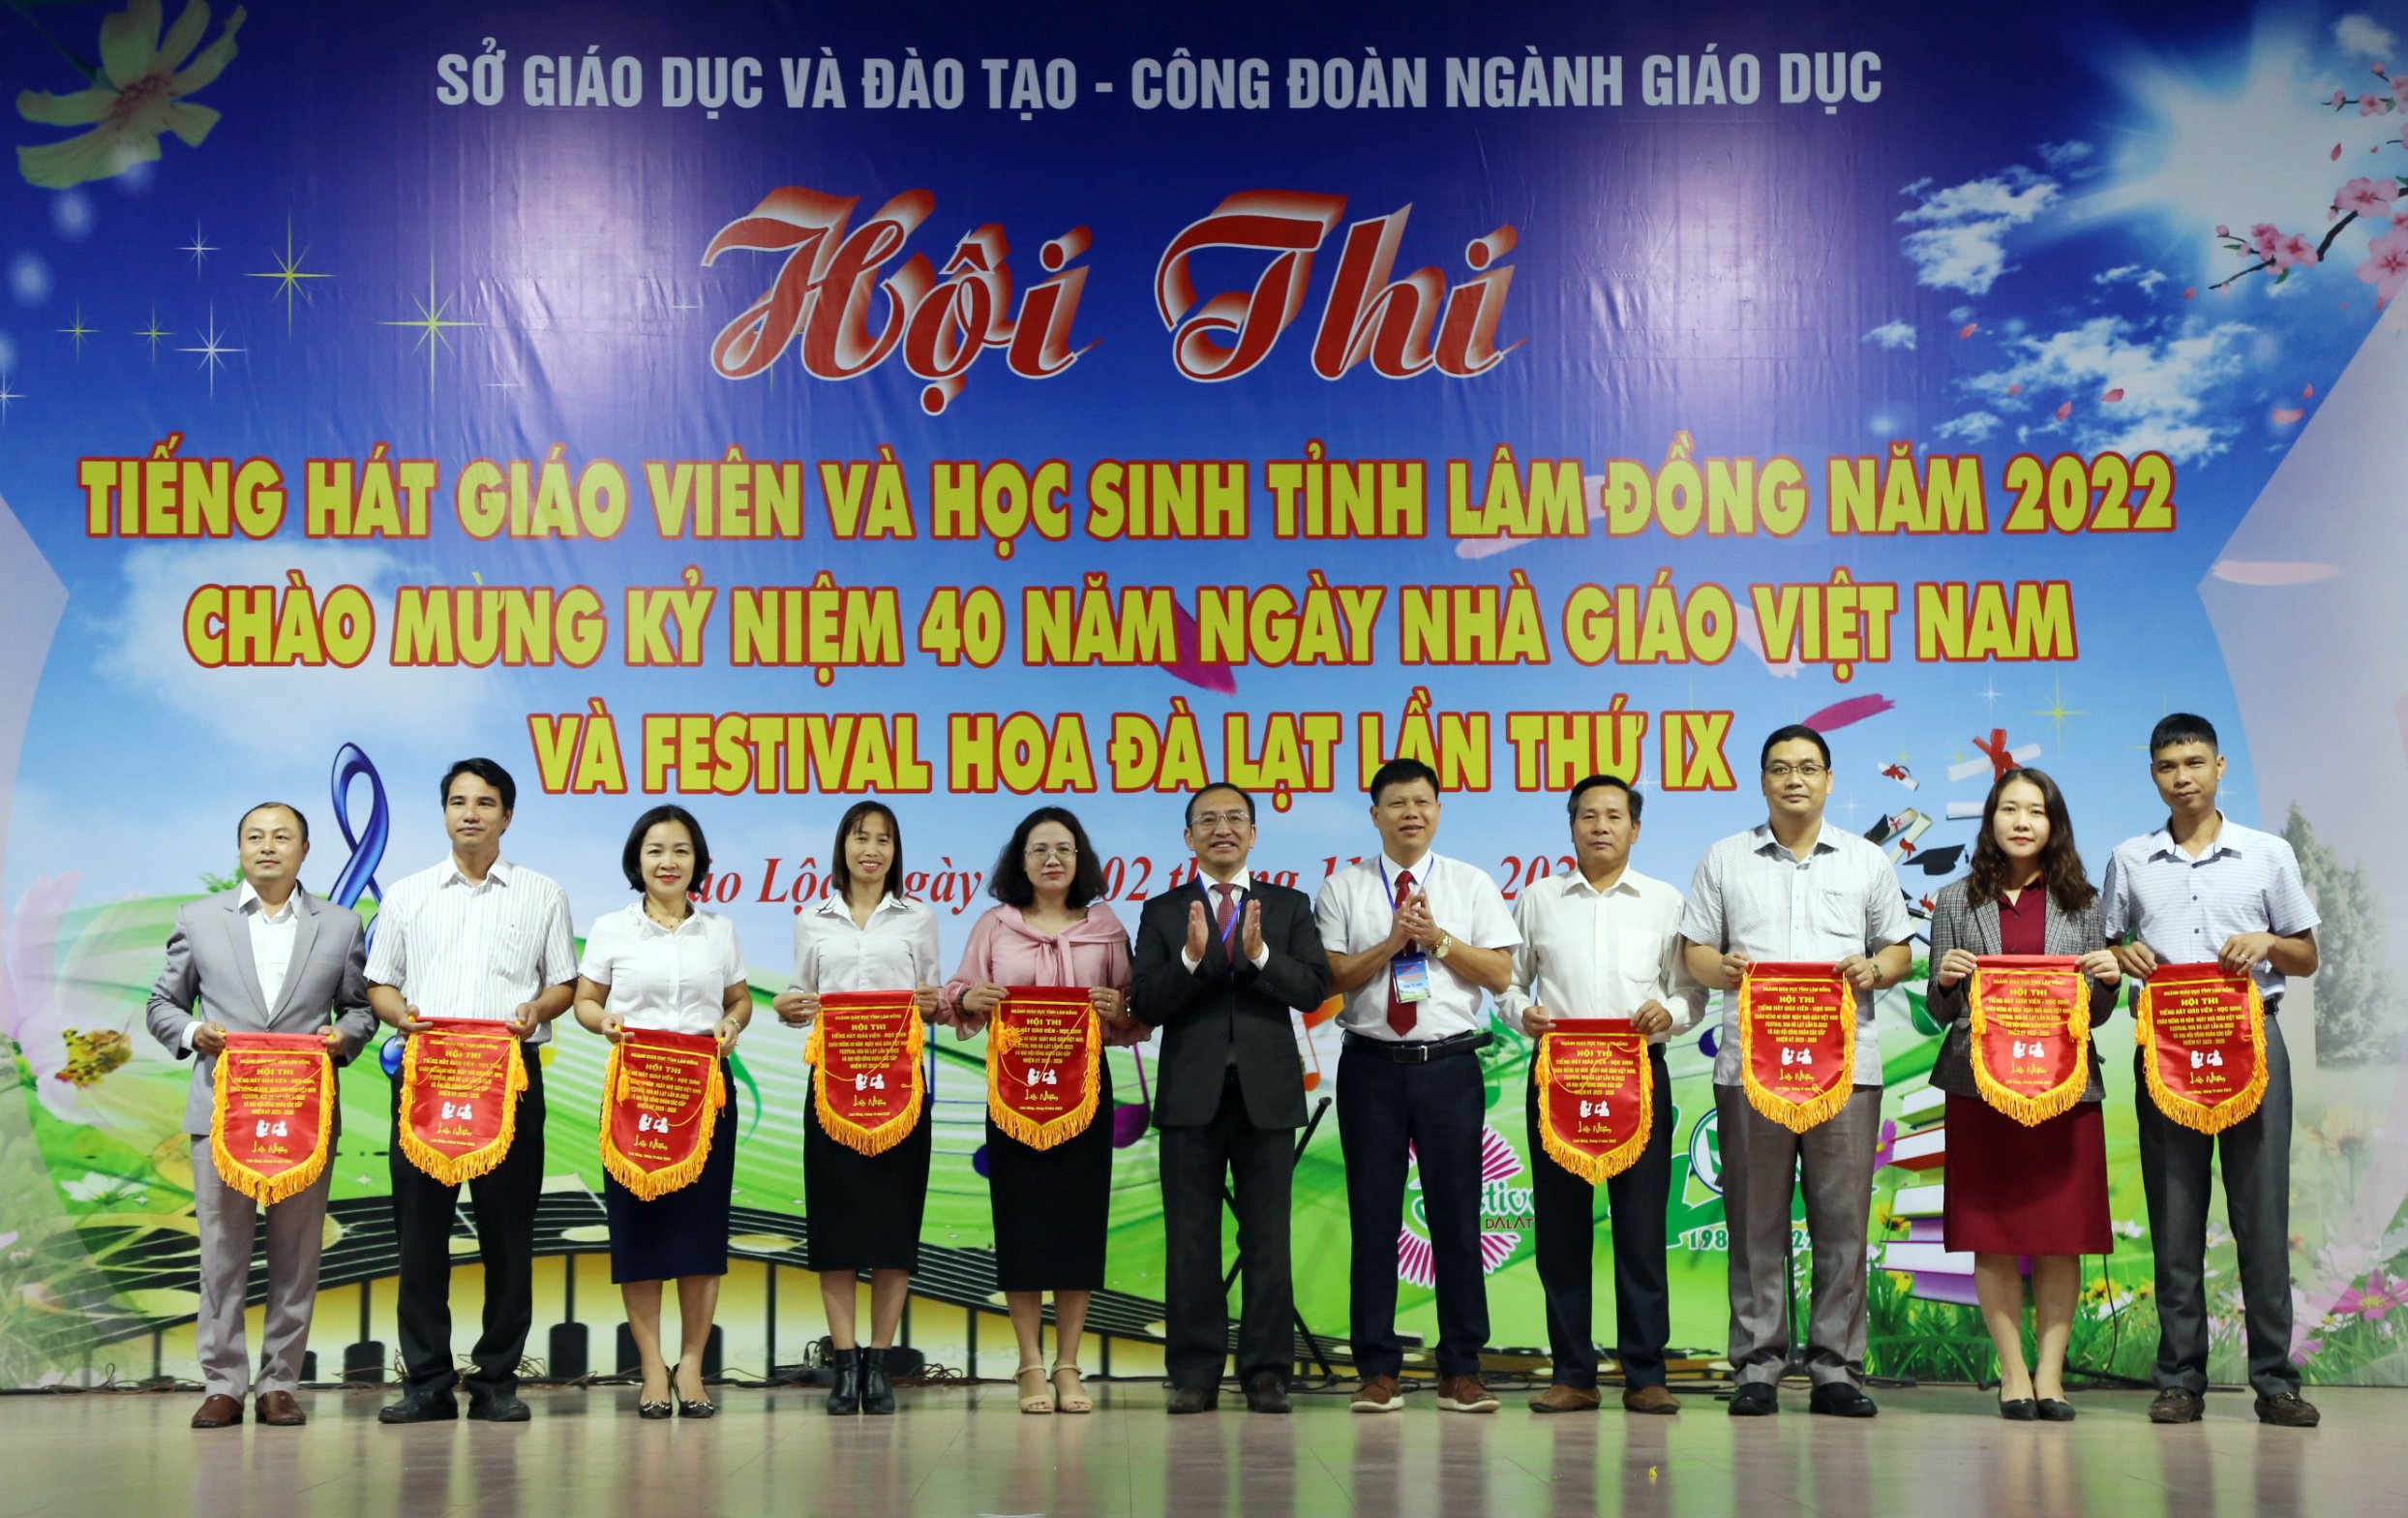 Khai mạc Hội thi Tiếng hát giáo viên và học sinh ngành Giáo dục tỉnh Lâm Đồng năm 2022, cụm Bảo Lộc